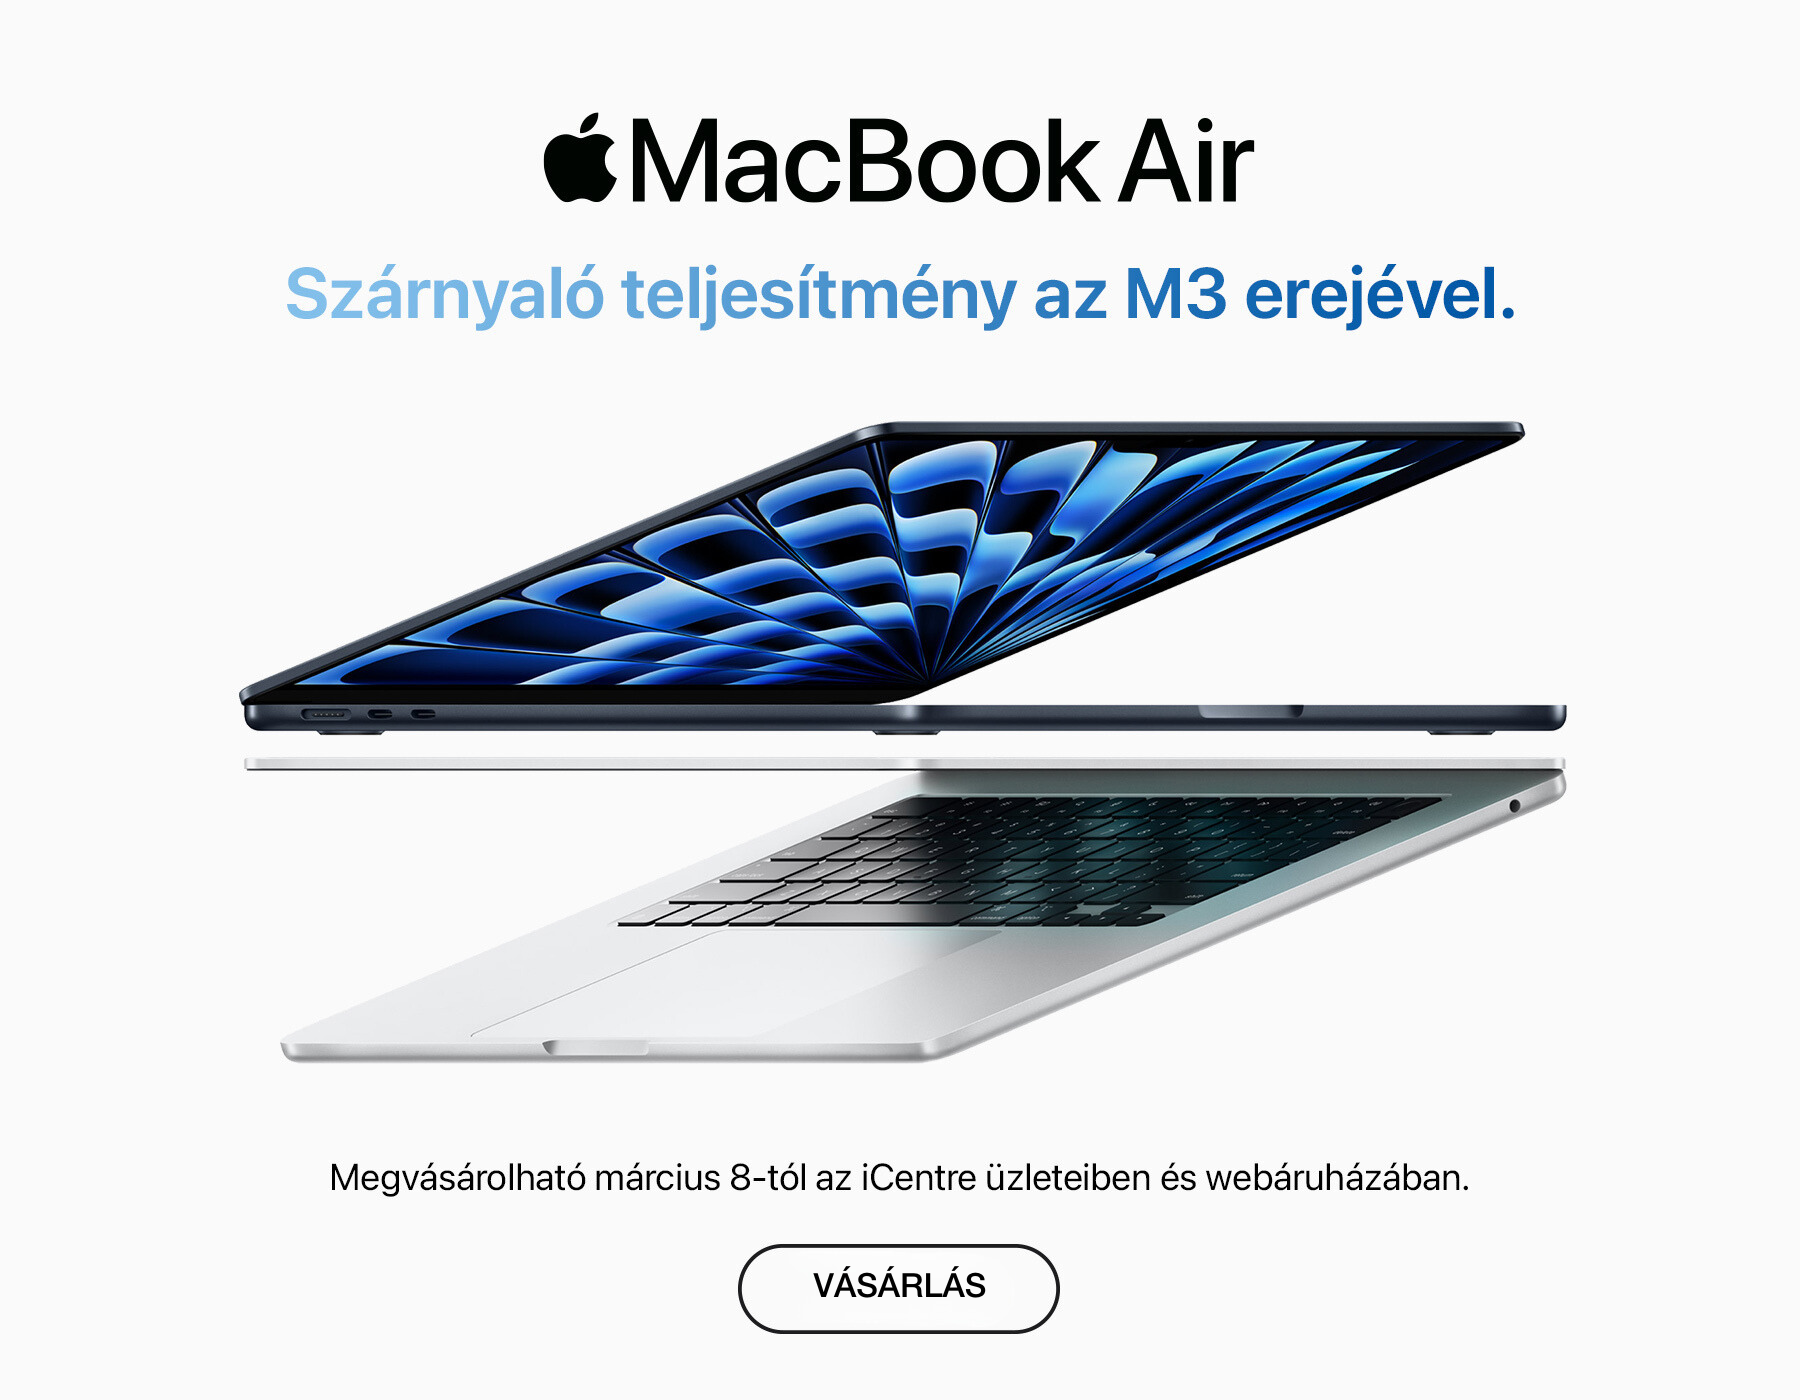 Macbook Air M3